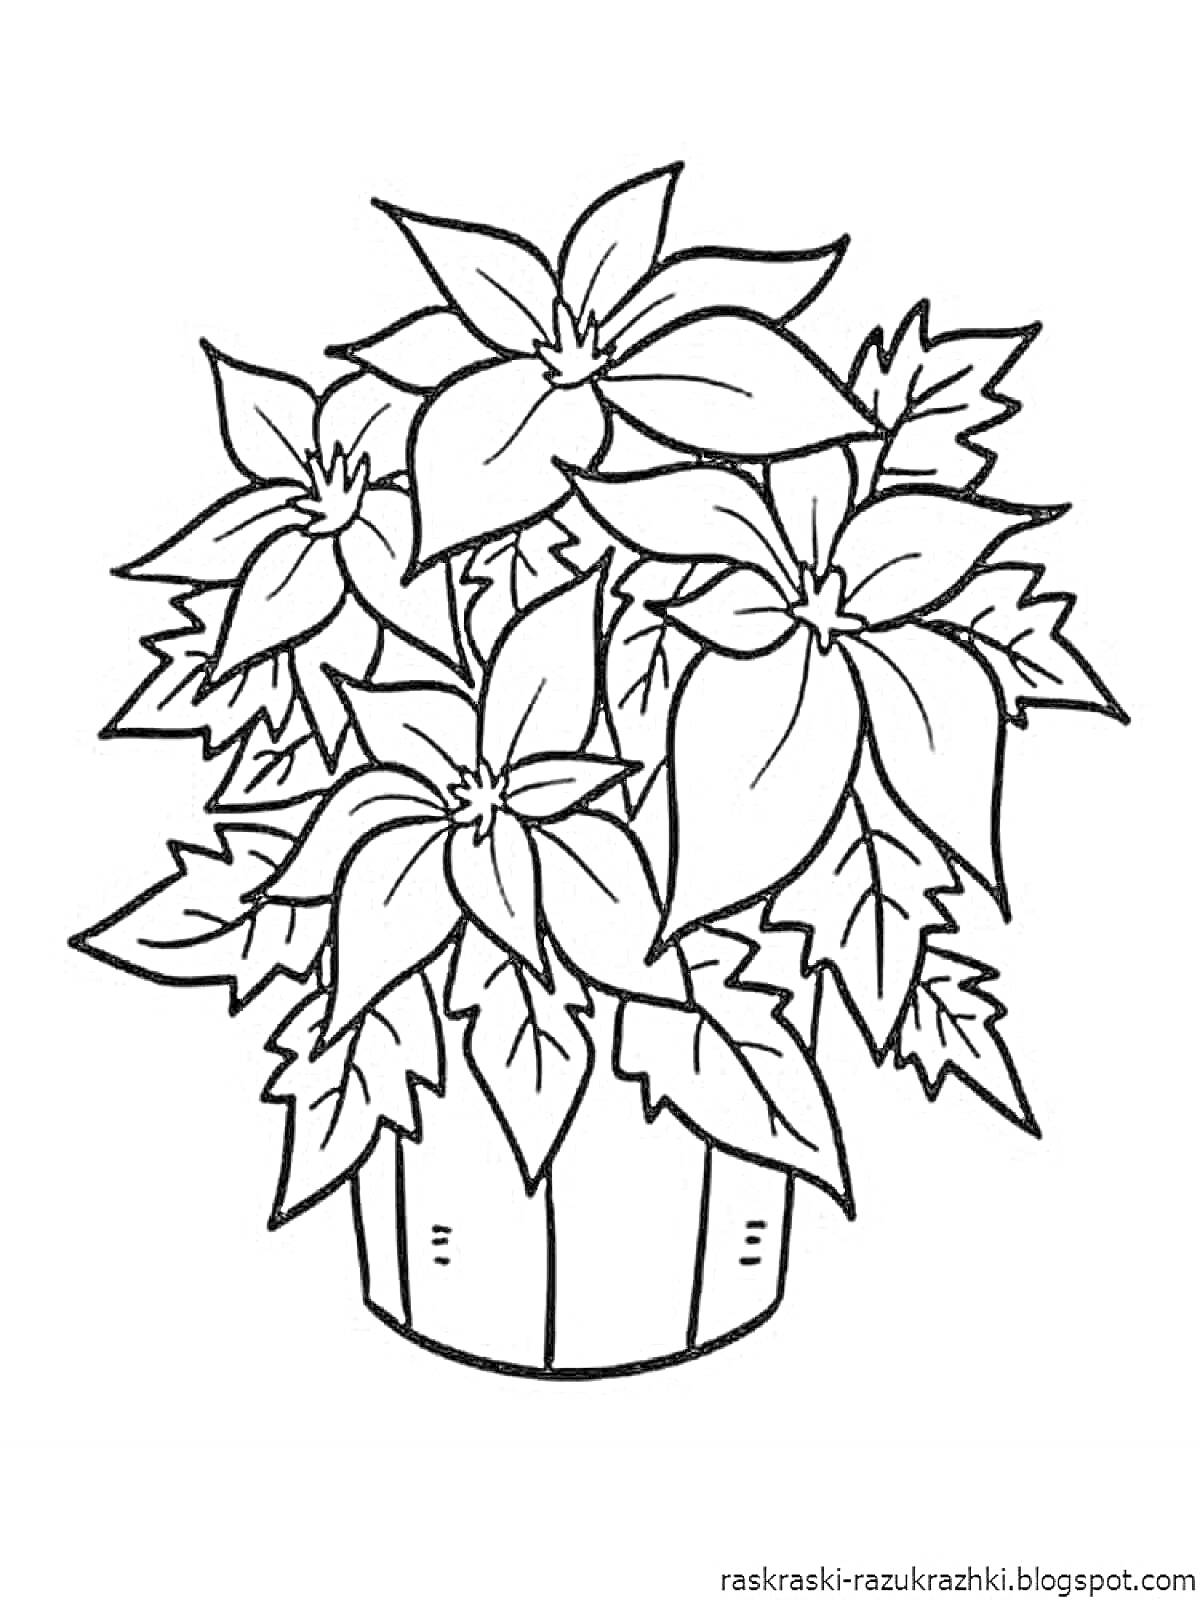 Раскраска Комнатное растение с большими листьями в горшке